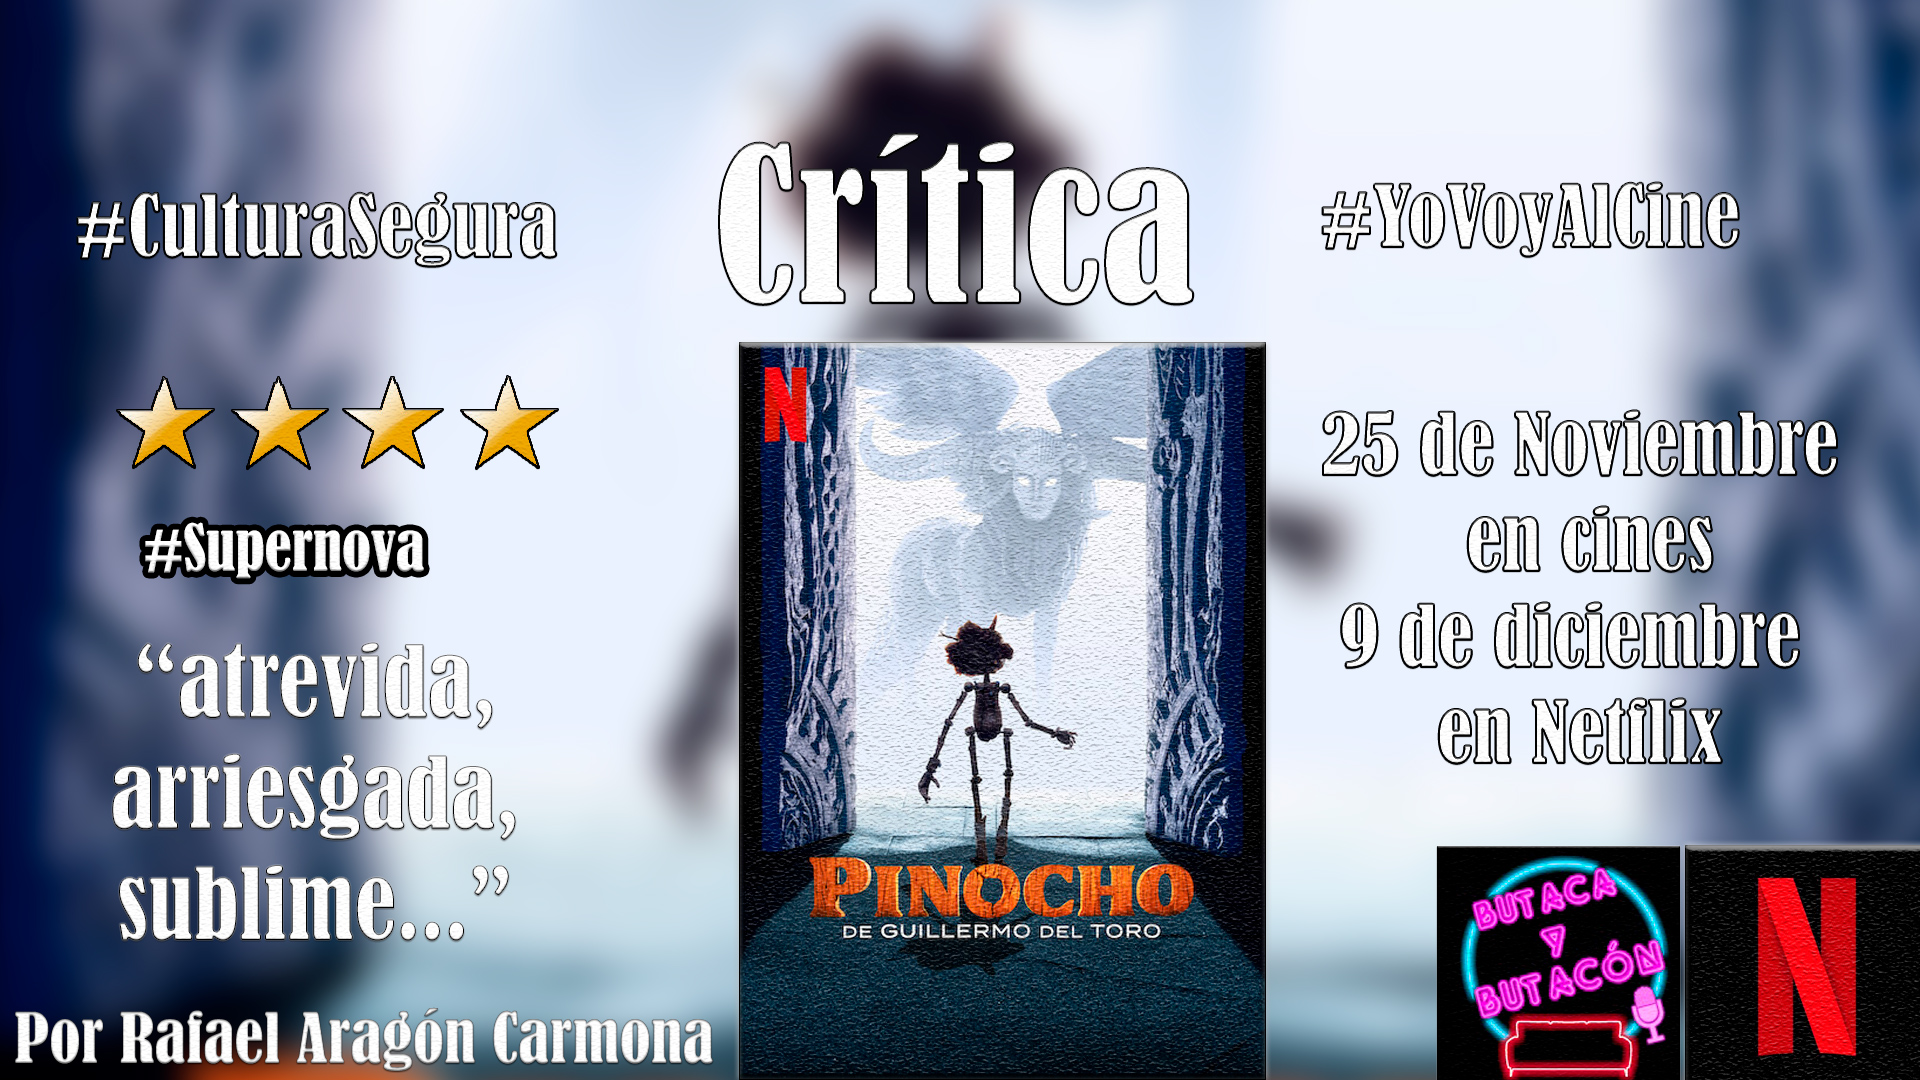 'Pinocho' de Guillermo del Toro: una película perfecta